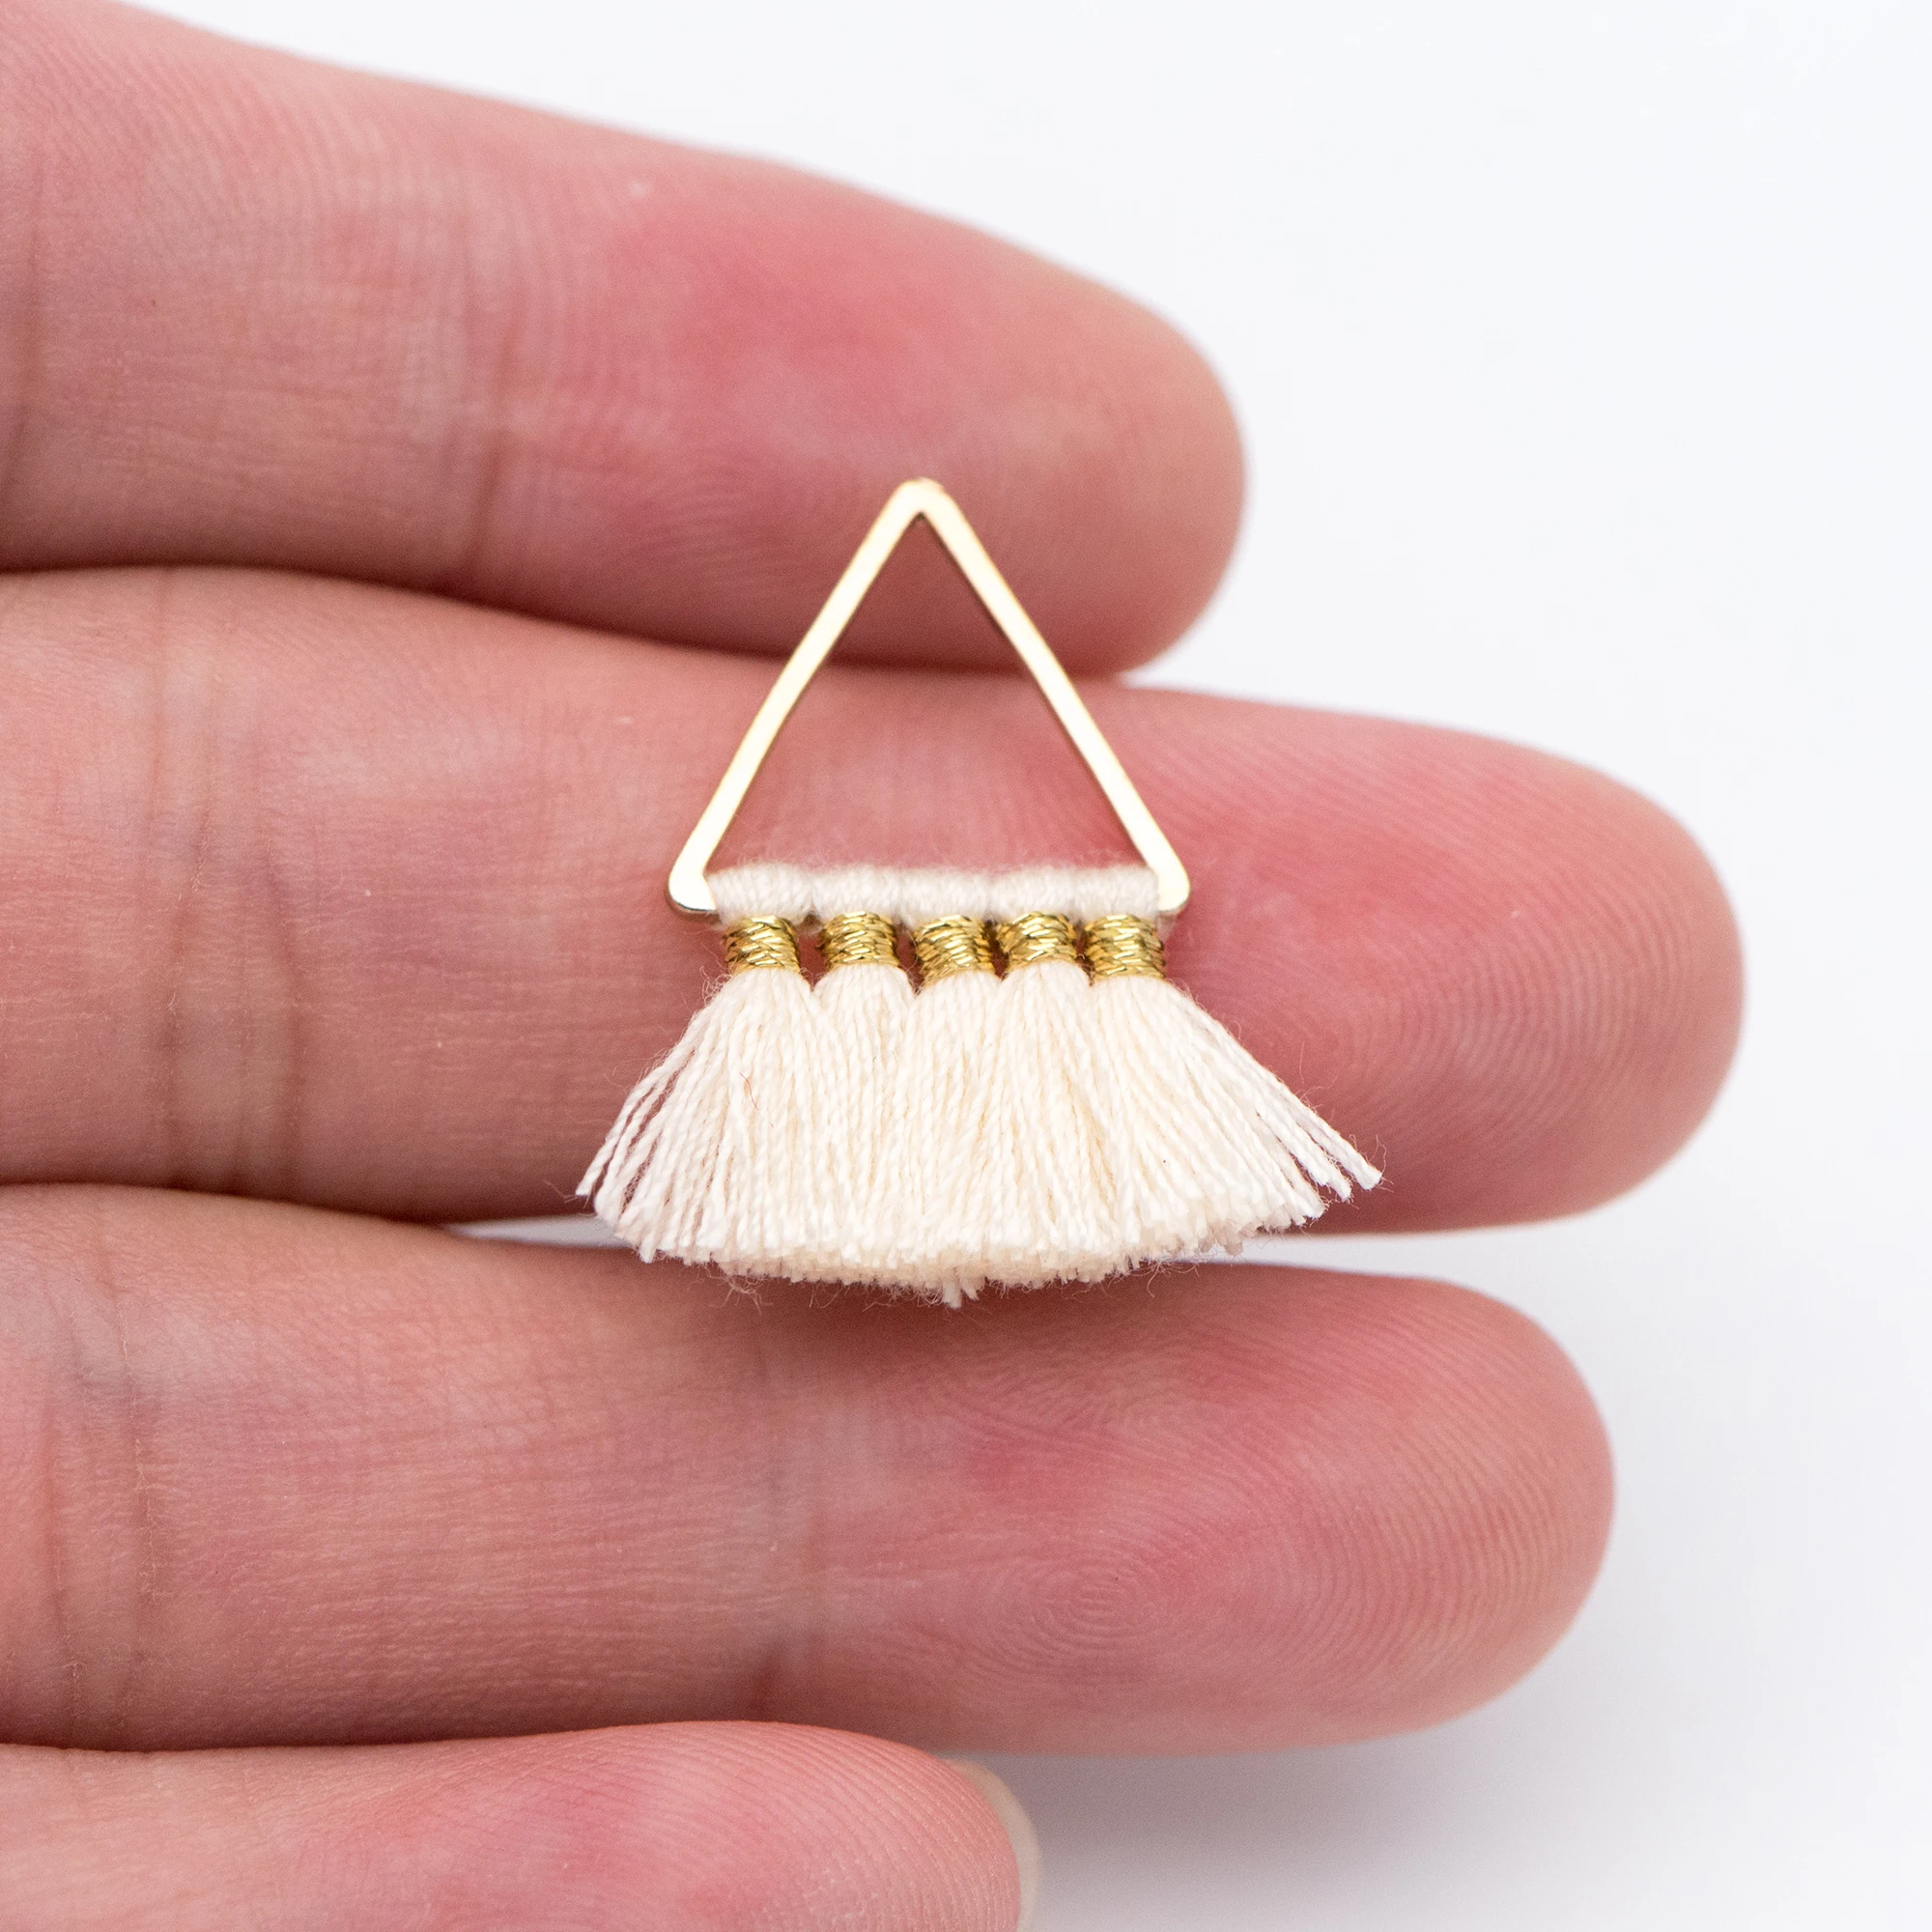 

6pcs Triangle Tassel Pendants, Cotton Tassel Charms for Earrings, Beige (FB-018-12)